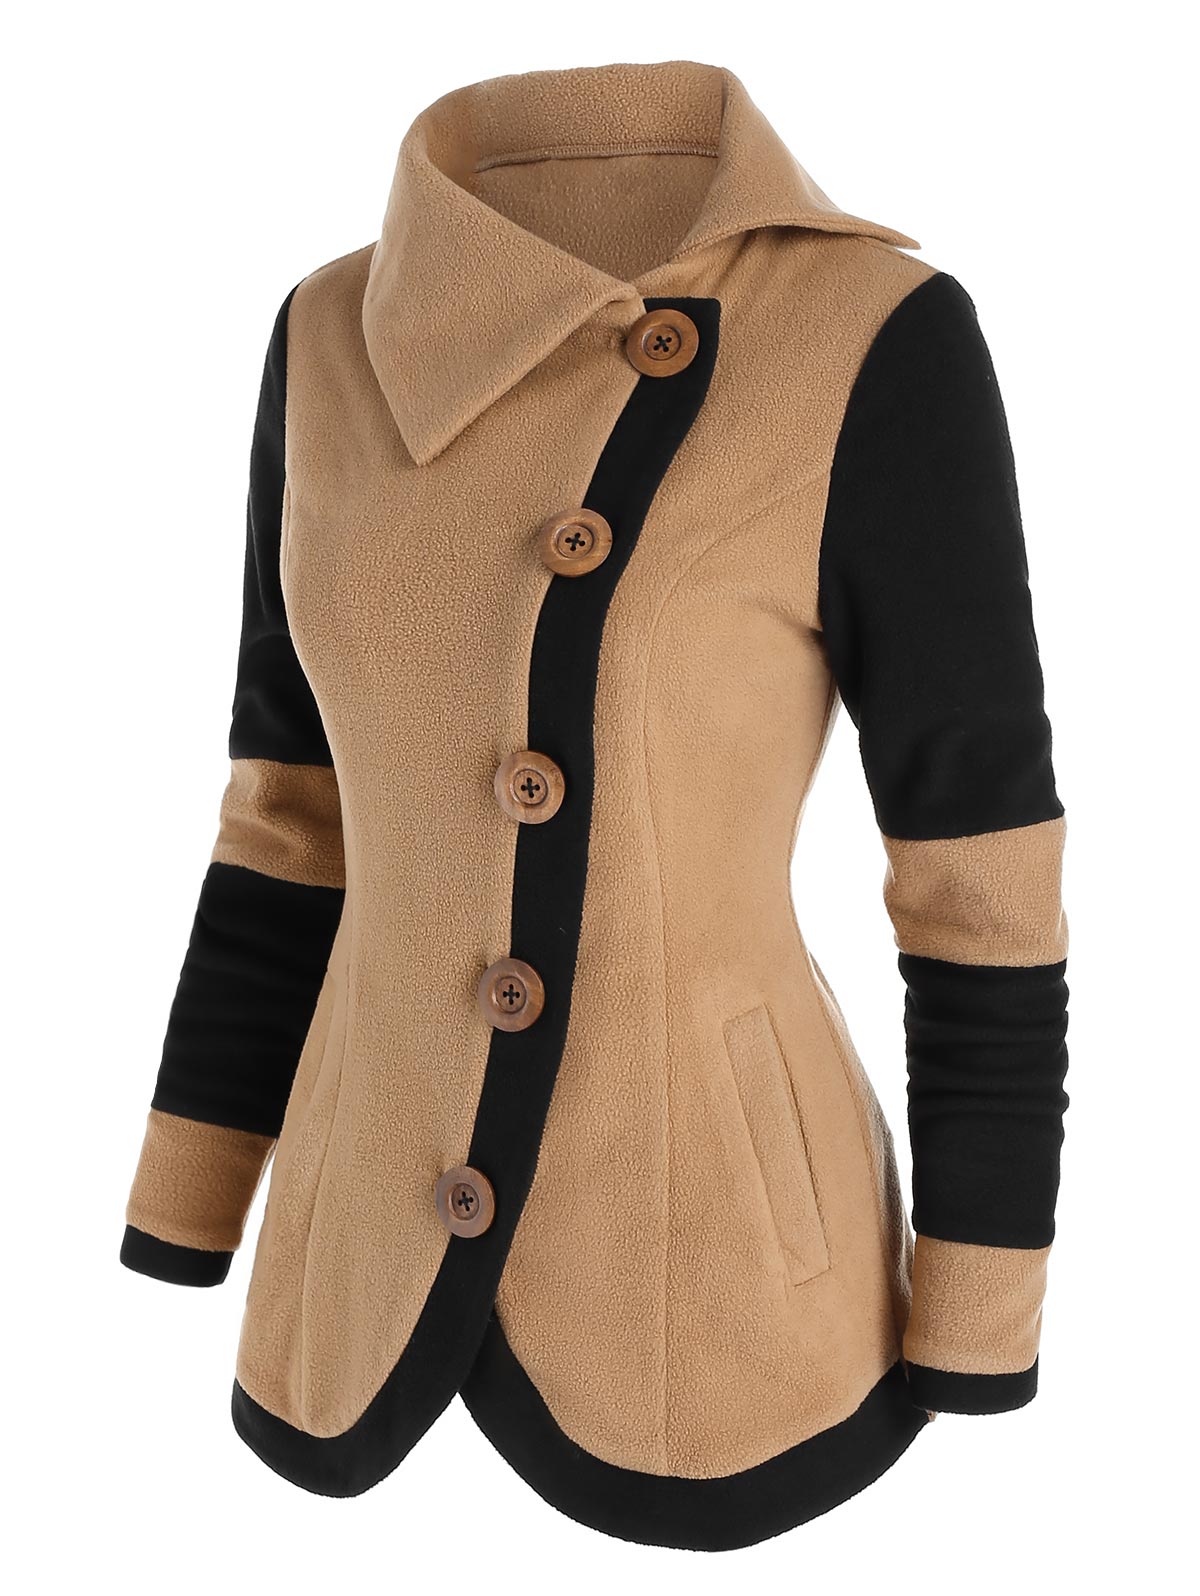 come4buy.com-Fleece Jacket teljes ujjú meleg kabát